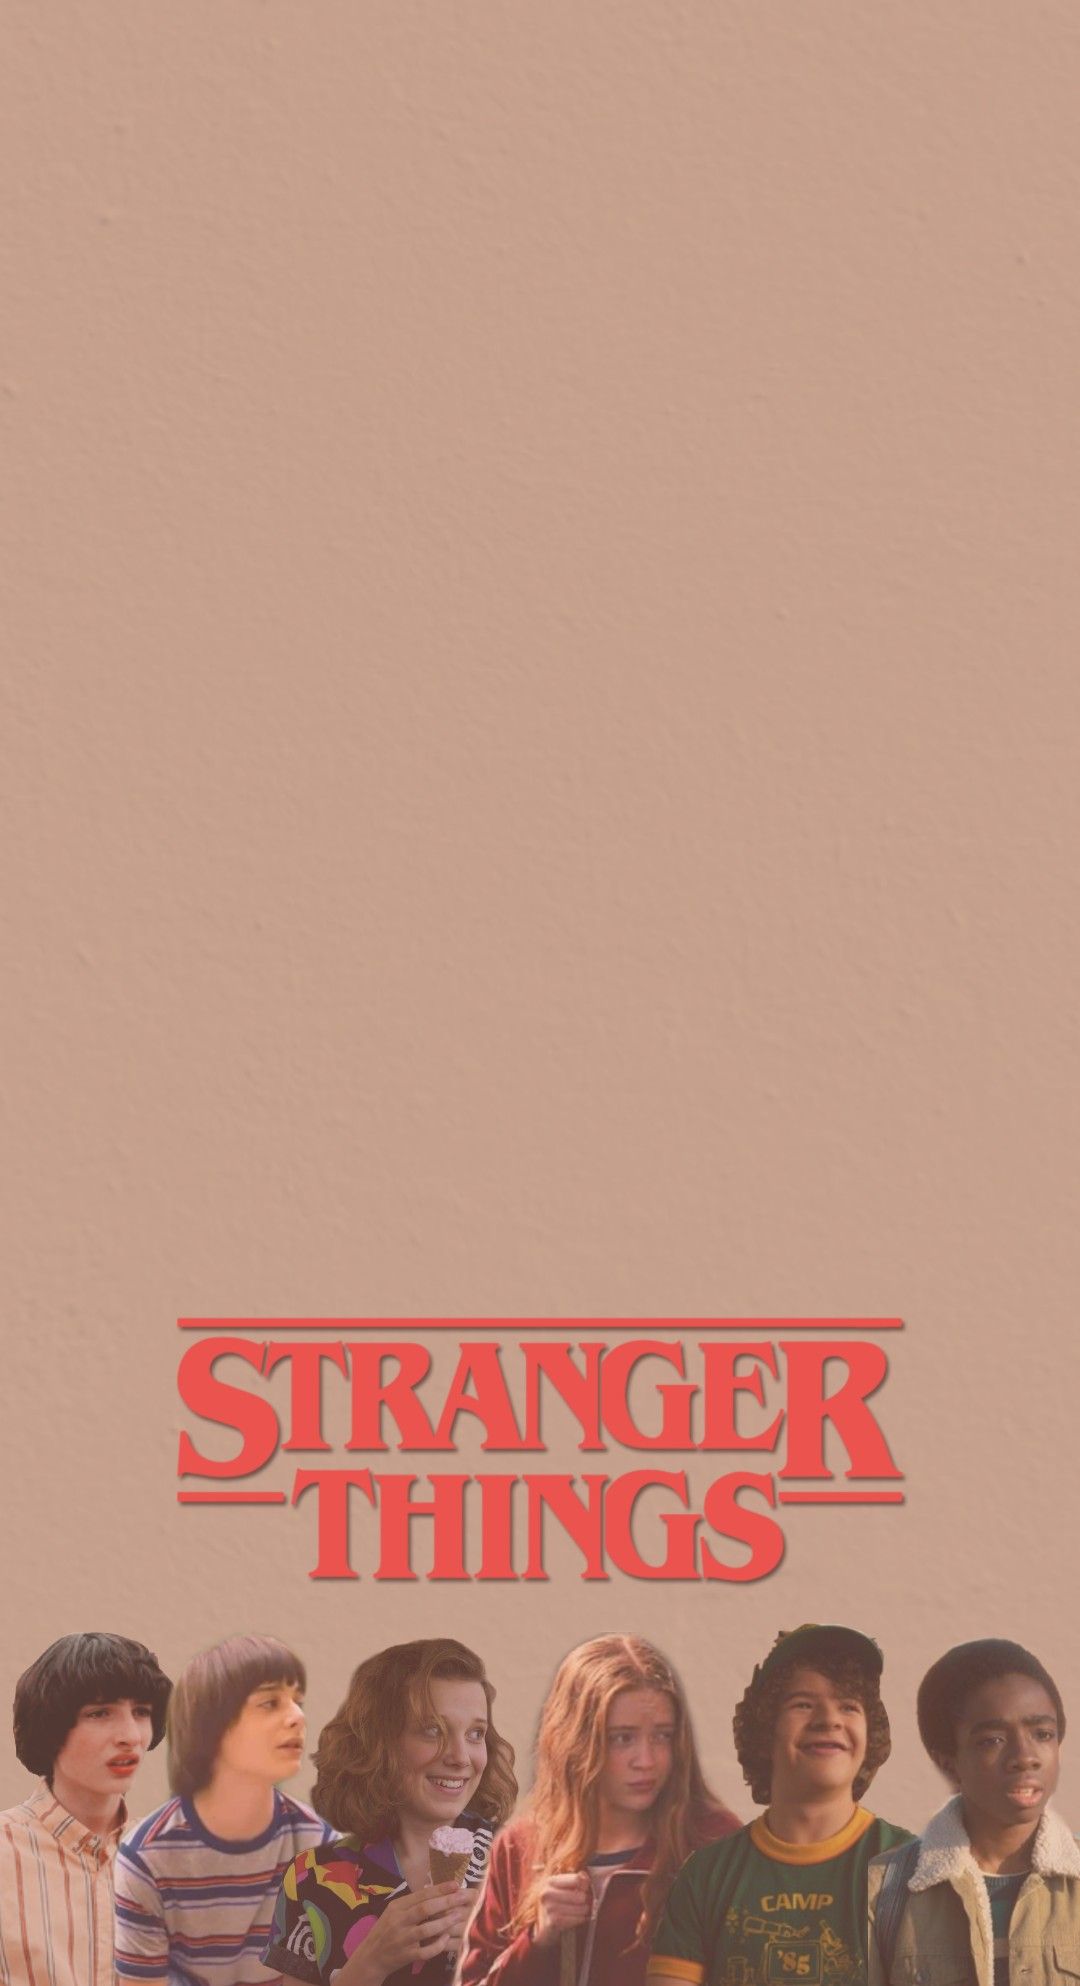 Aesthetic Stranger Things Wallpaper. Stranger things, Stranger, Stranger things wallpaper